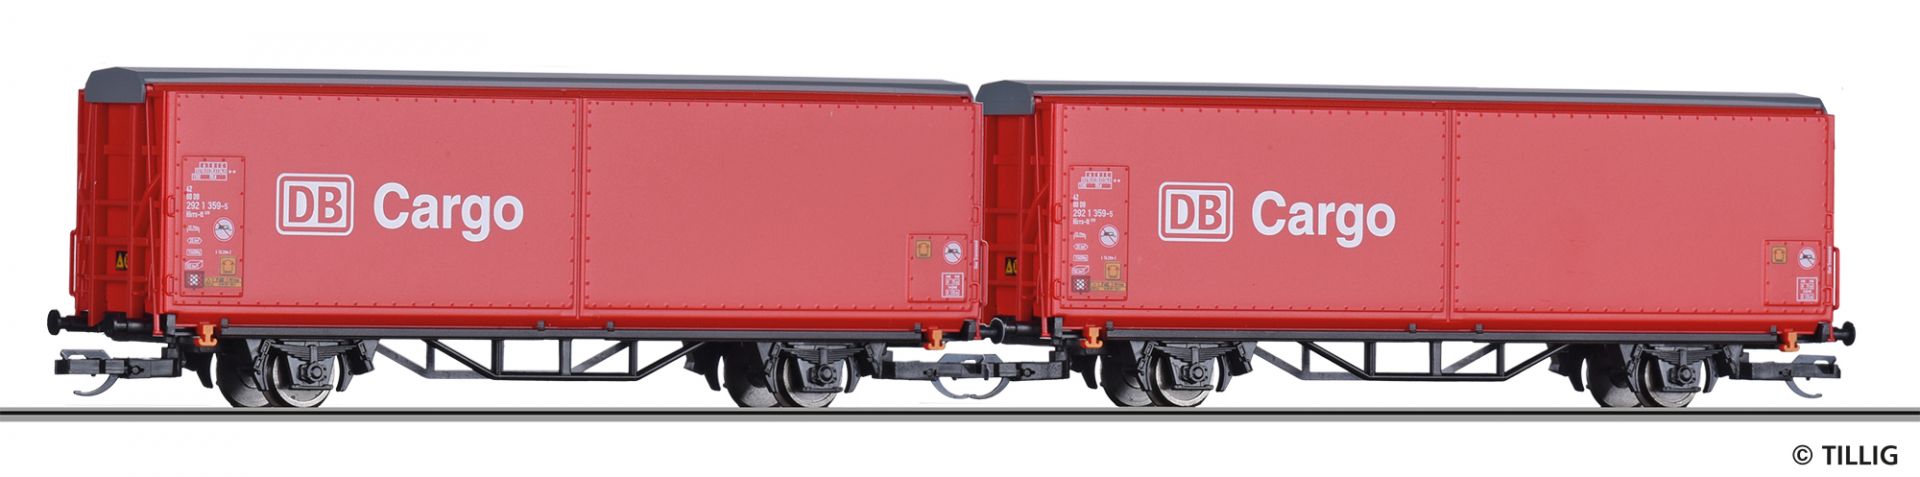 01028 | Schiebewandwagen-Einheit DB Cargo